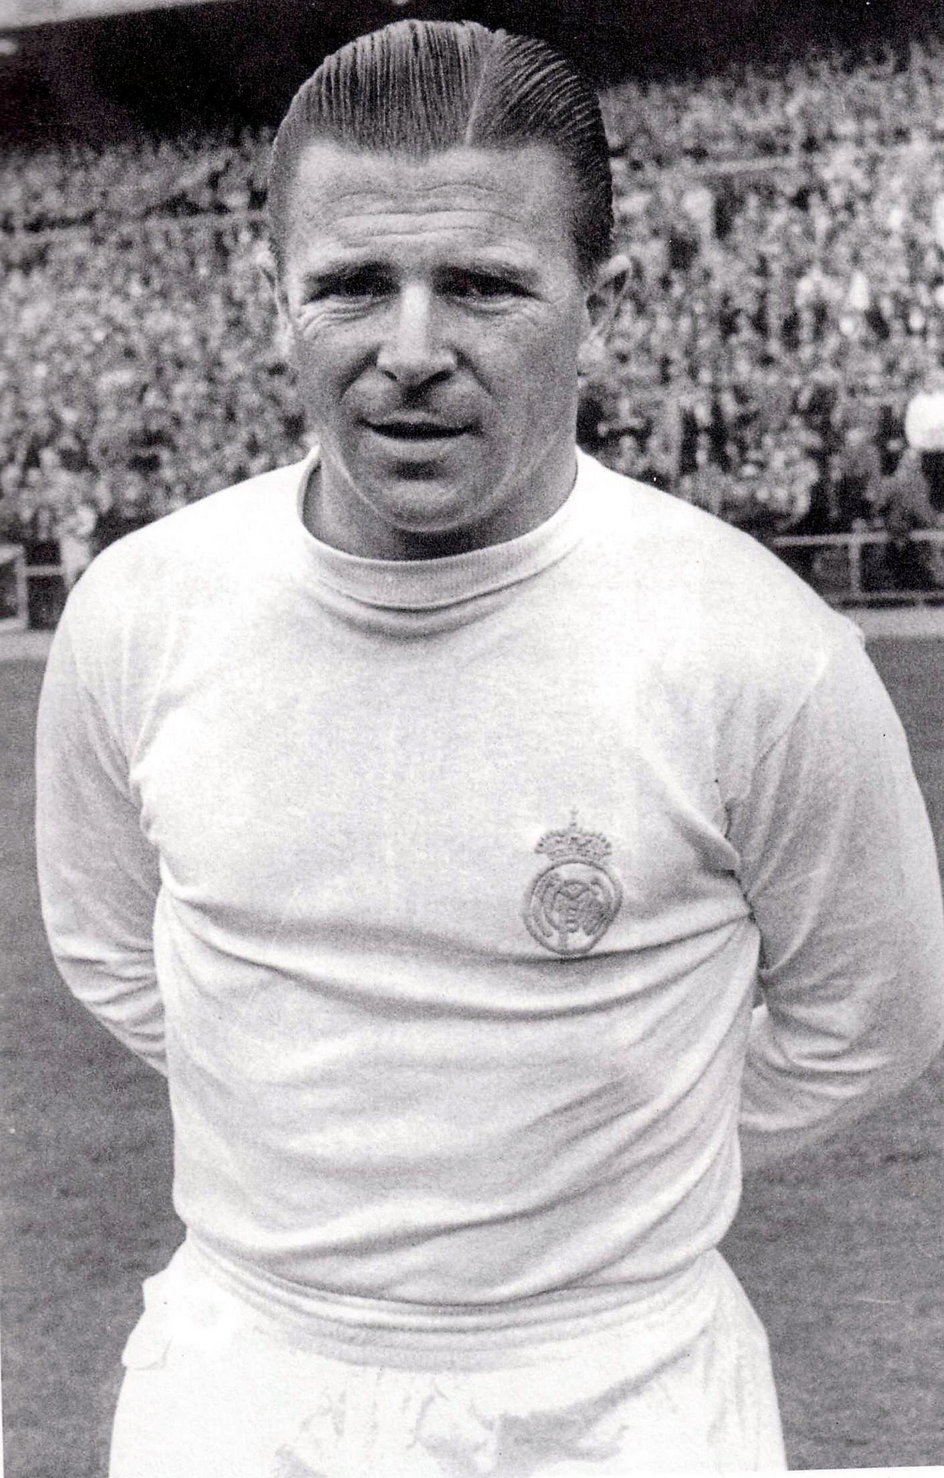 Legendarny Ferenc Puskas strzelił jednego z goli w meczu Węgry – RFN w 1954 roku